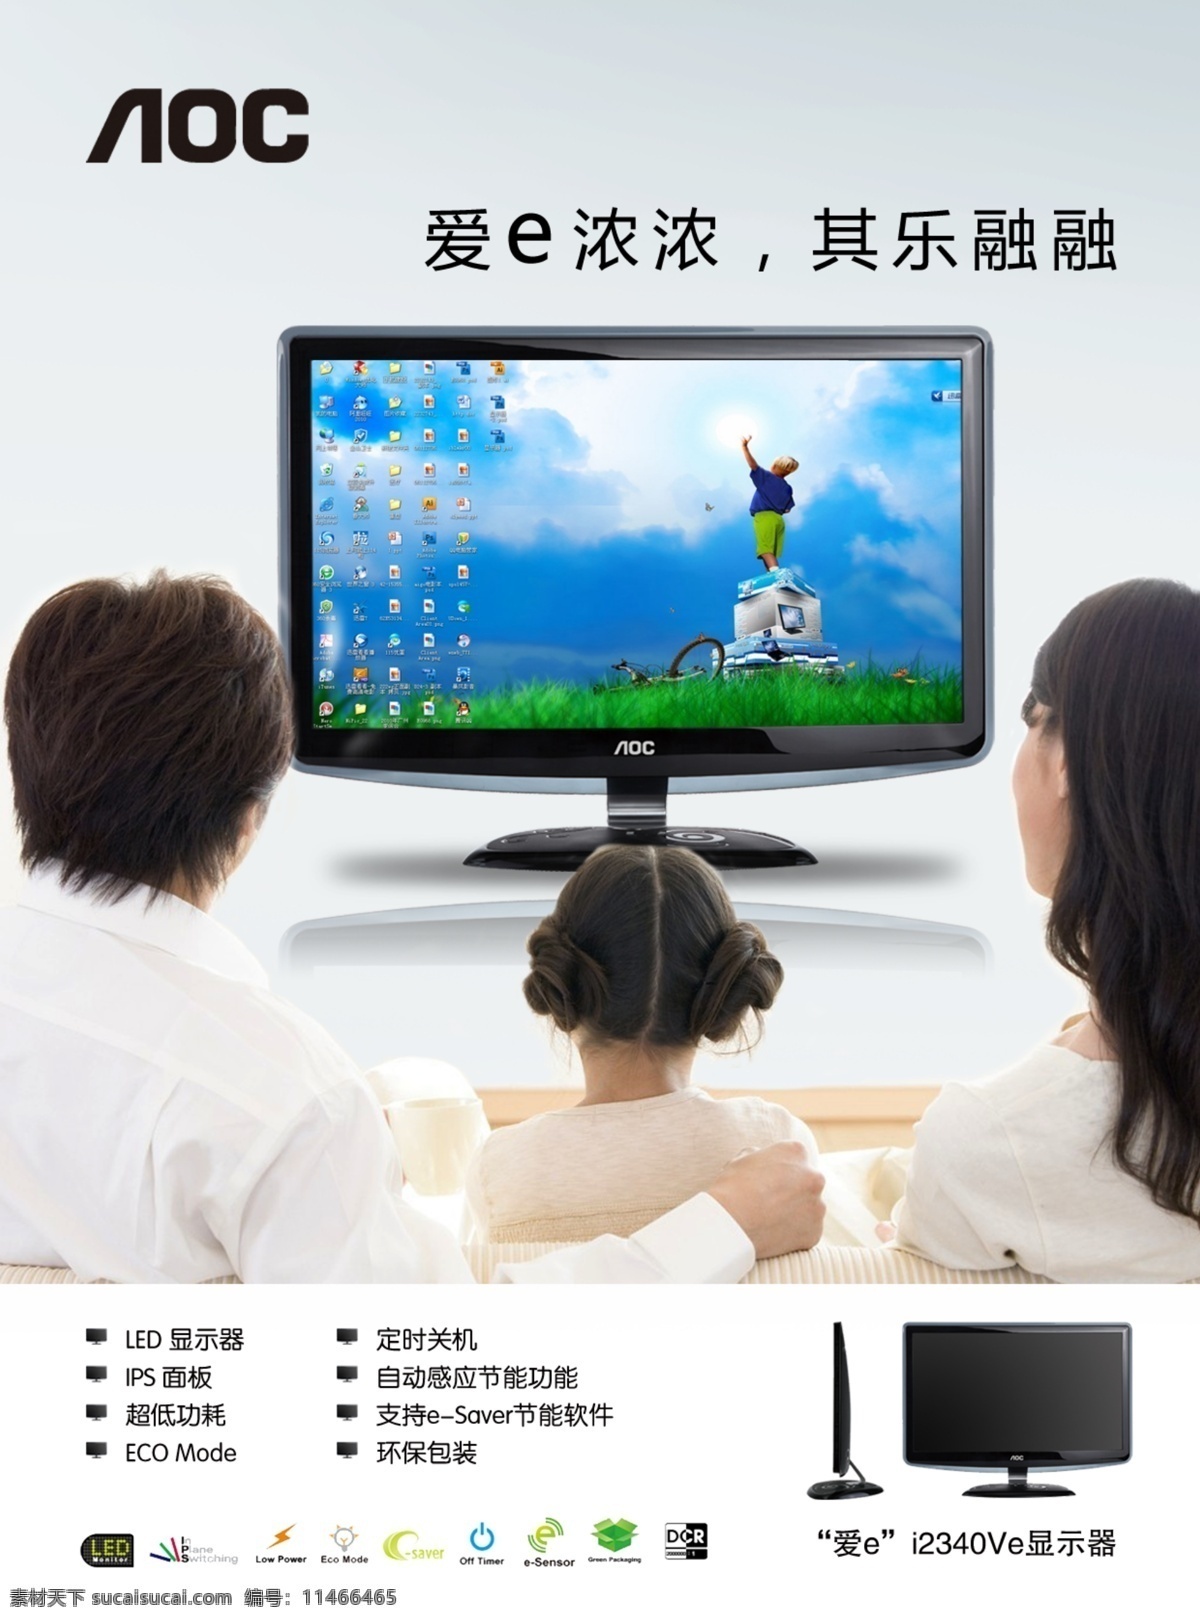 显示器广告 显示器 广告 一家人 看电视 aoc 彩显 集团 国际 公司 绿色 屏幕 环保 电脑广告 计算机 pc机 3d 3d显示器 dm宣传单 广告设计模板